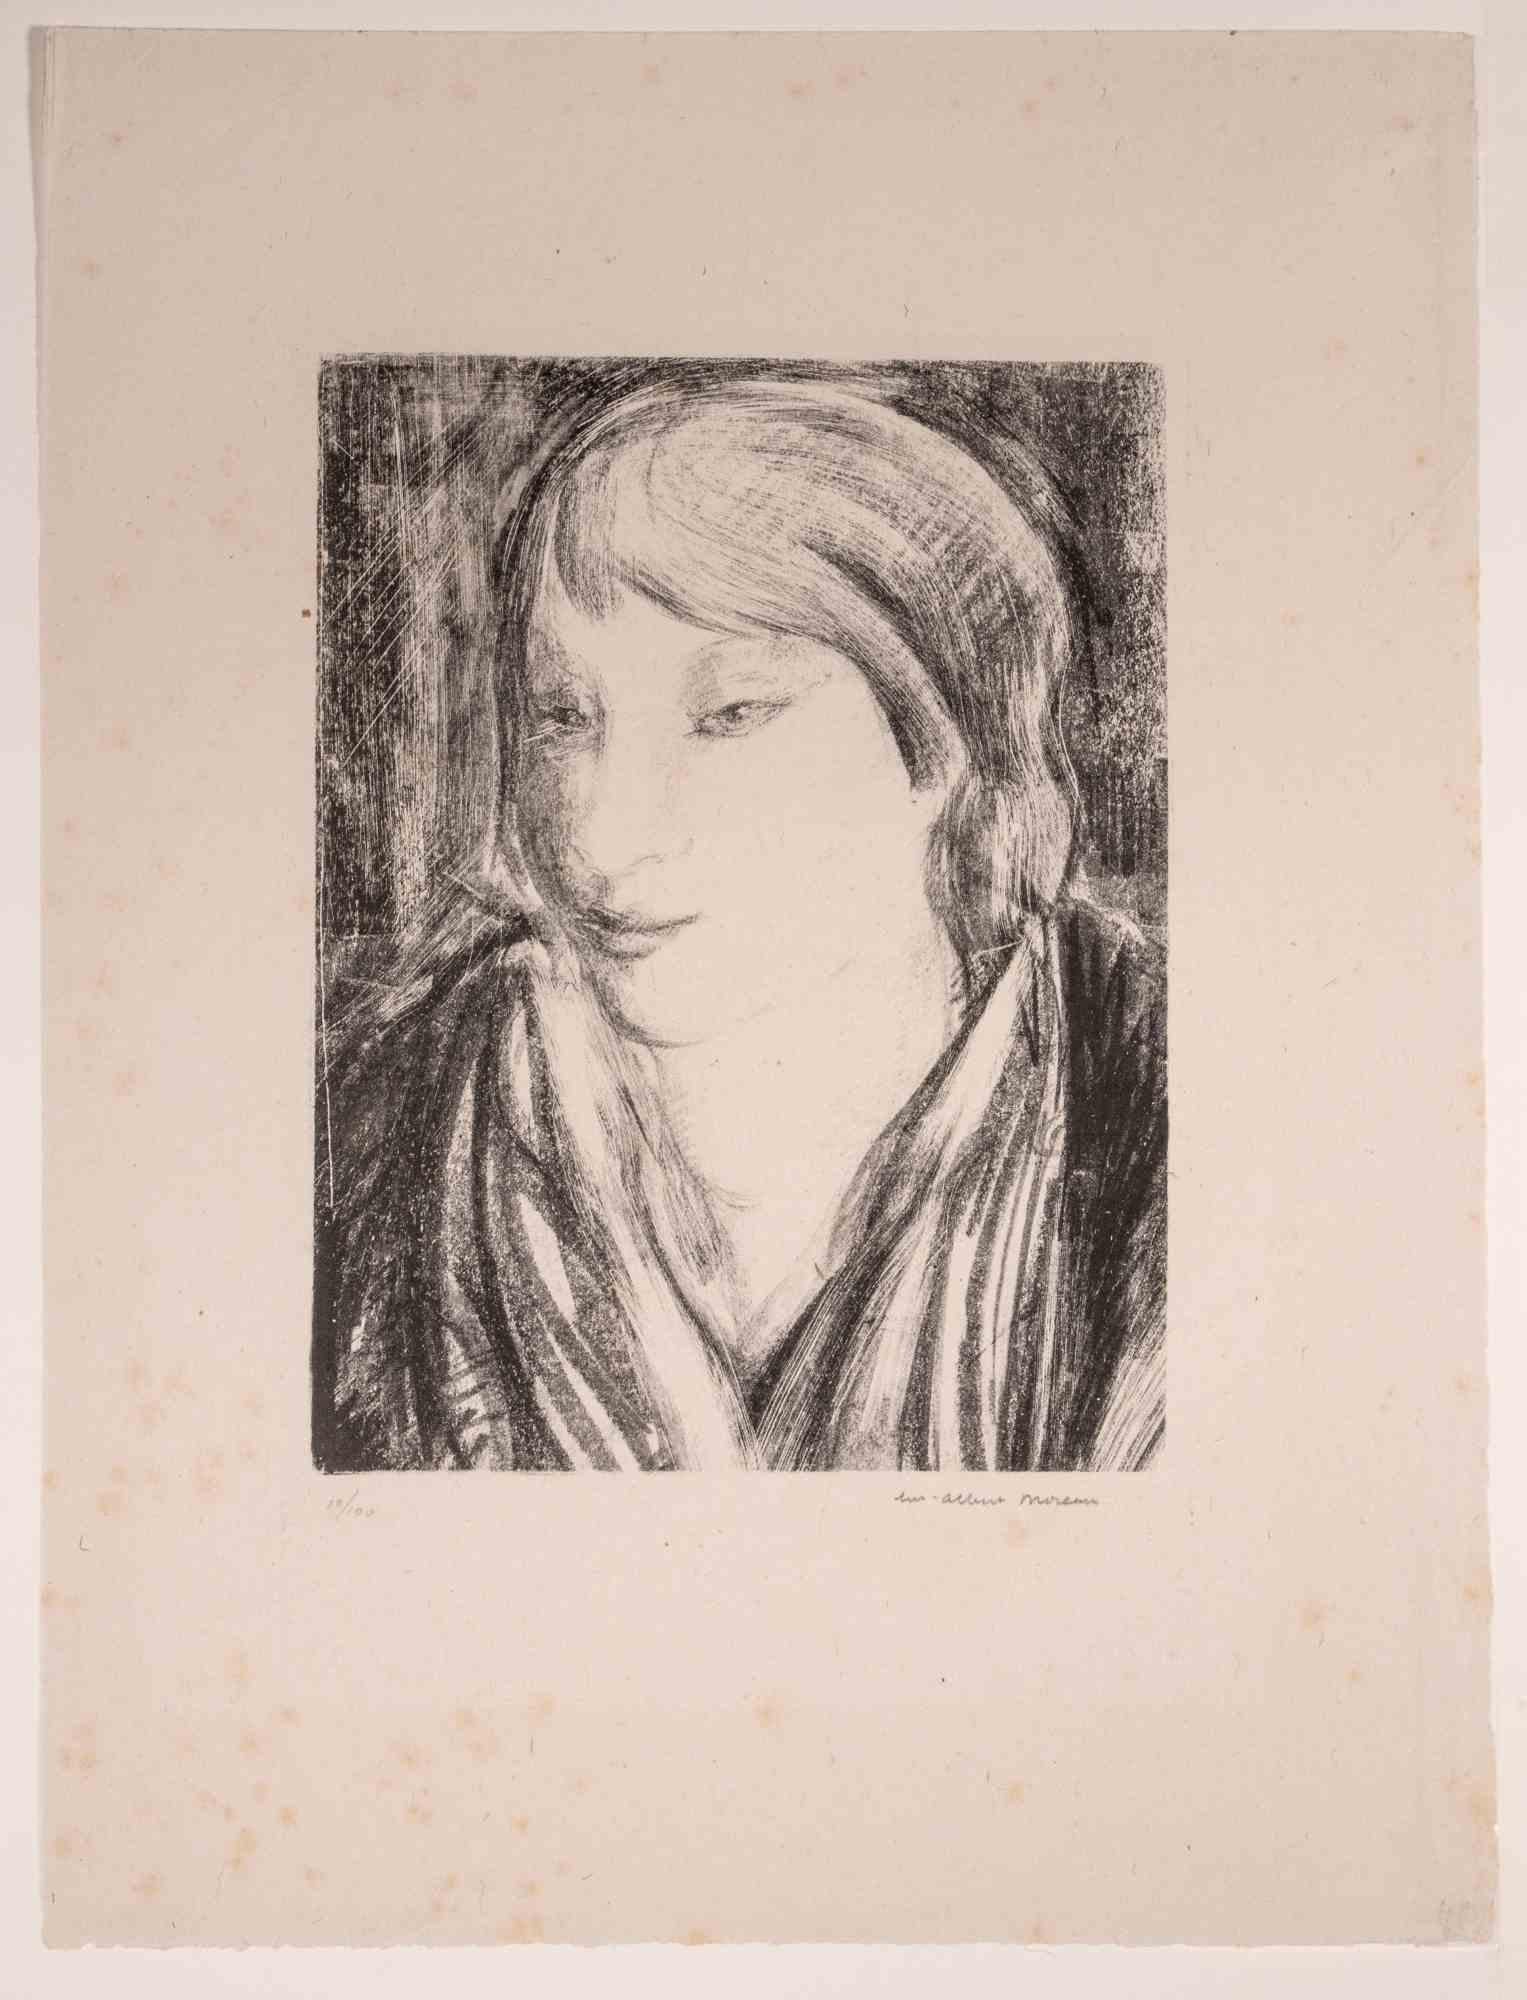 Porträt von  Frau ist eine Lithographie auf elfenbeinfarbenem Papier von Luc Albert Moreau.

Das Kunstwerk ist in gutem Zustand, inklusive eines weißen Passepartouts aus Karton (63,5x50 cm).

Handsigniert in der rechten unteren Ecke, nummeriert auf